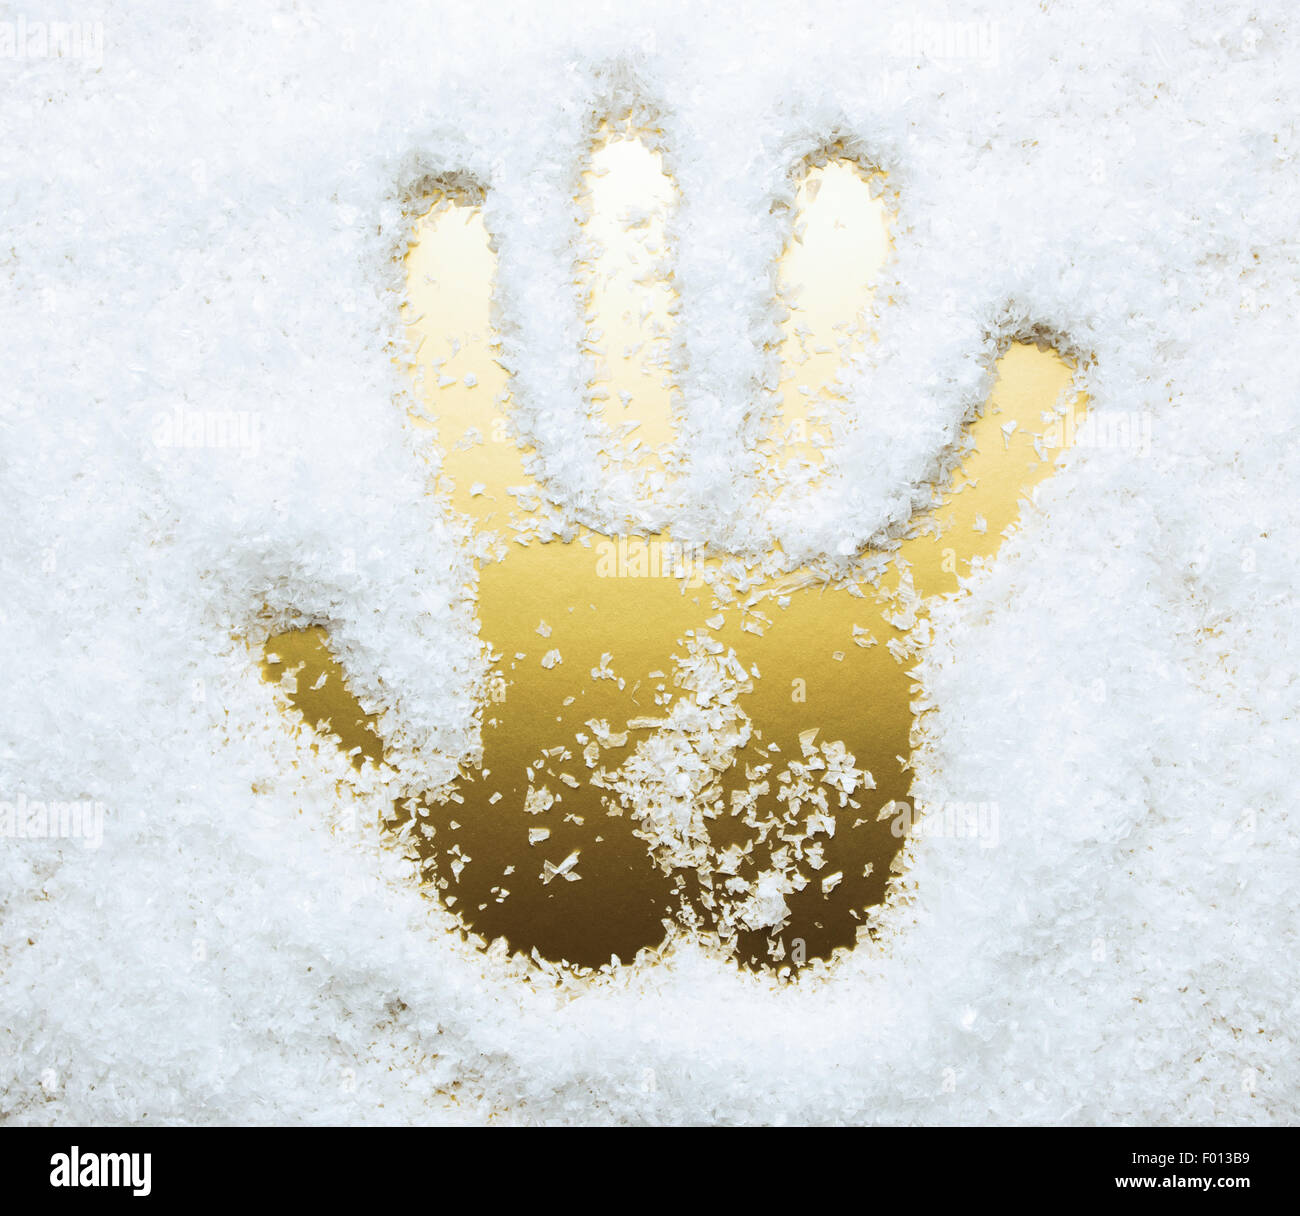 Imprimer la main dans la neige artificielle, la couleur d'or Banque D'Images